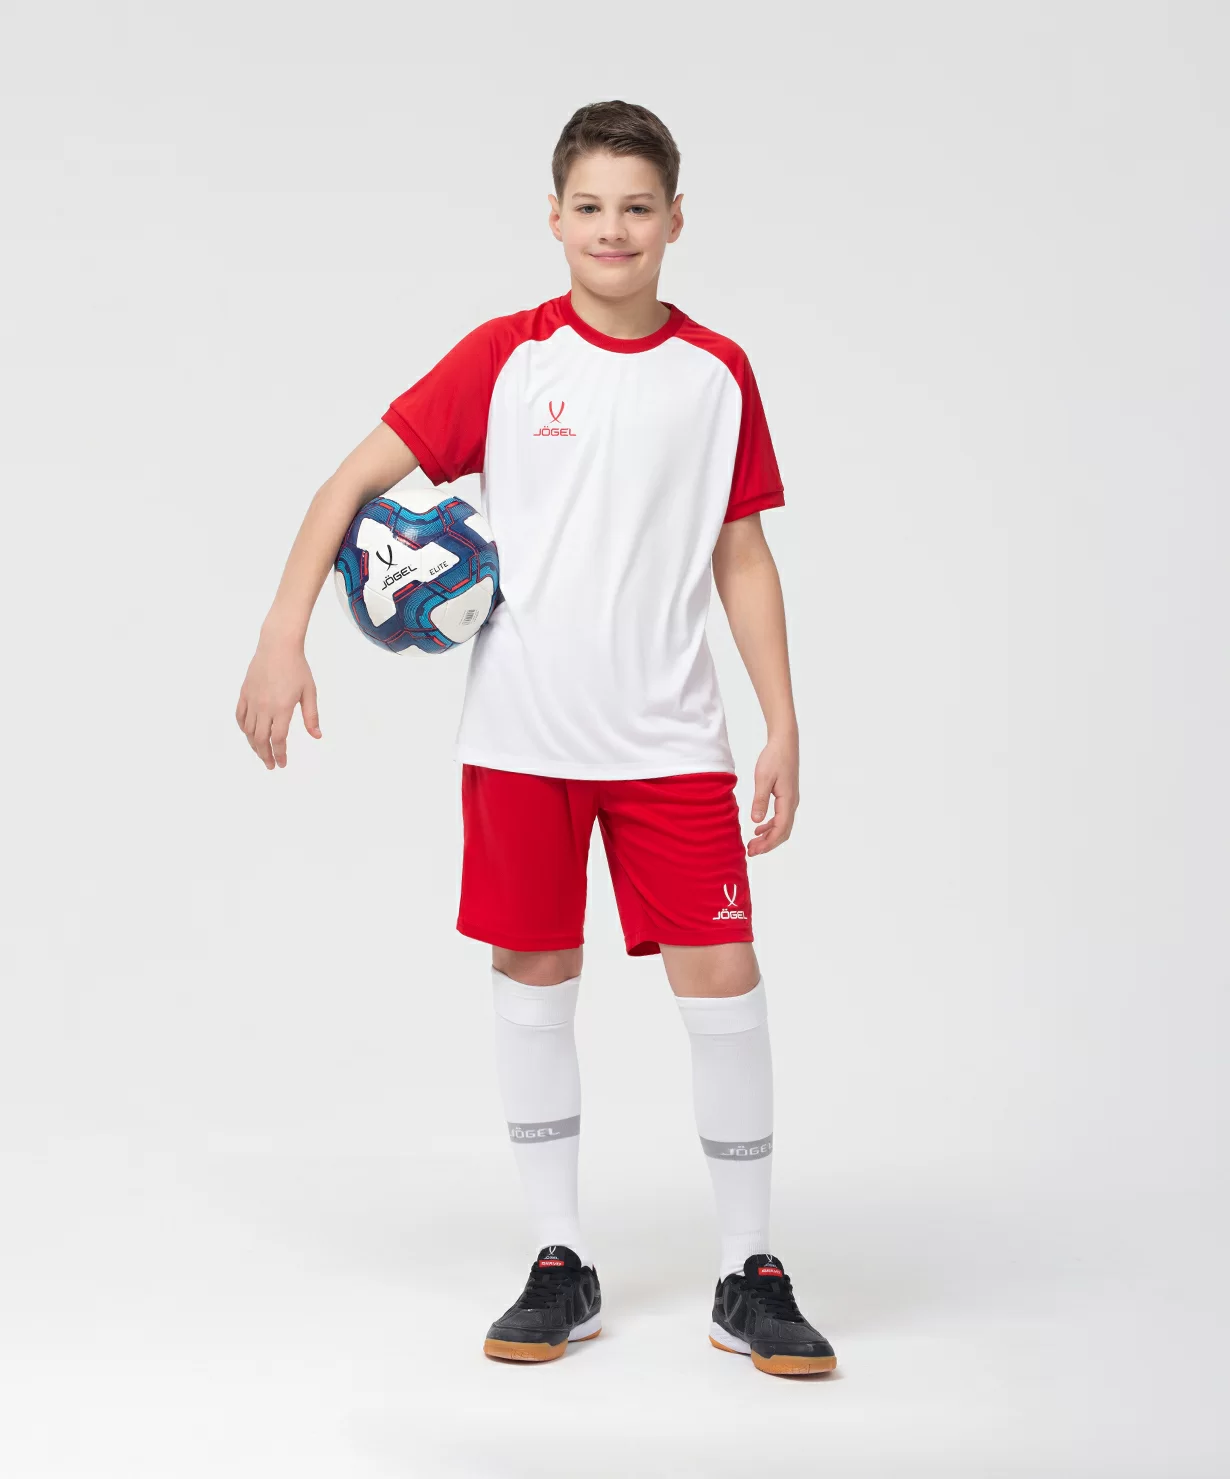 Фото Футболка игровая CAMP Reglan Jersey, белый/красный, детский Jögel со склада магазина Спортев